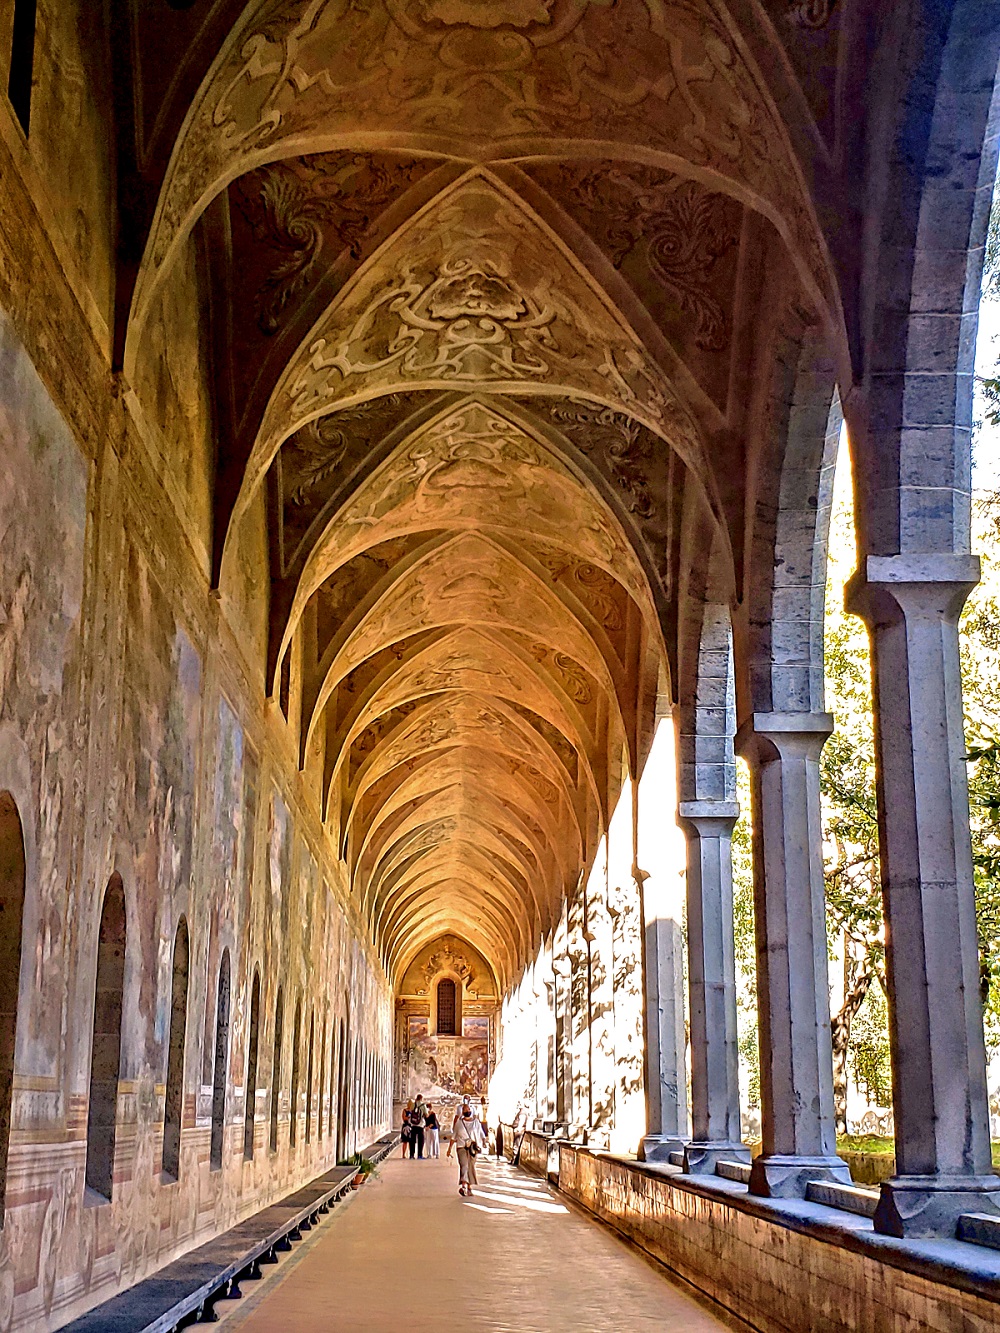 covered cloister walkway at Santa Chiara